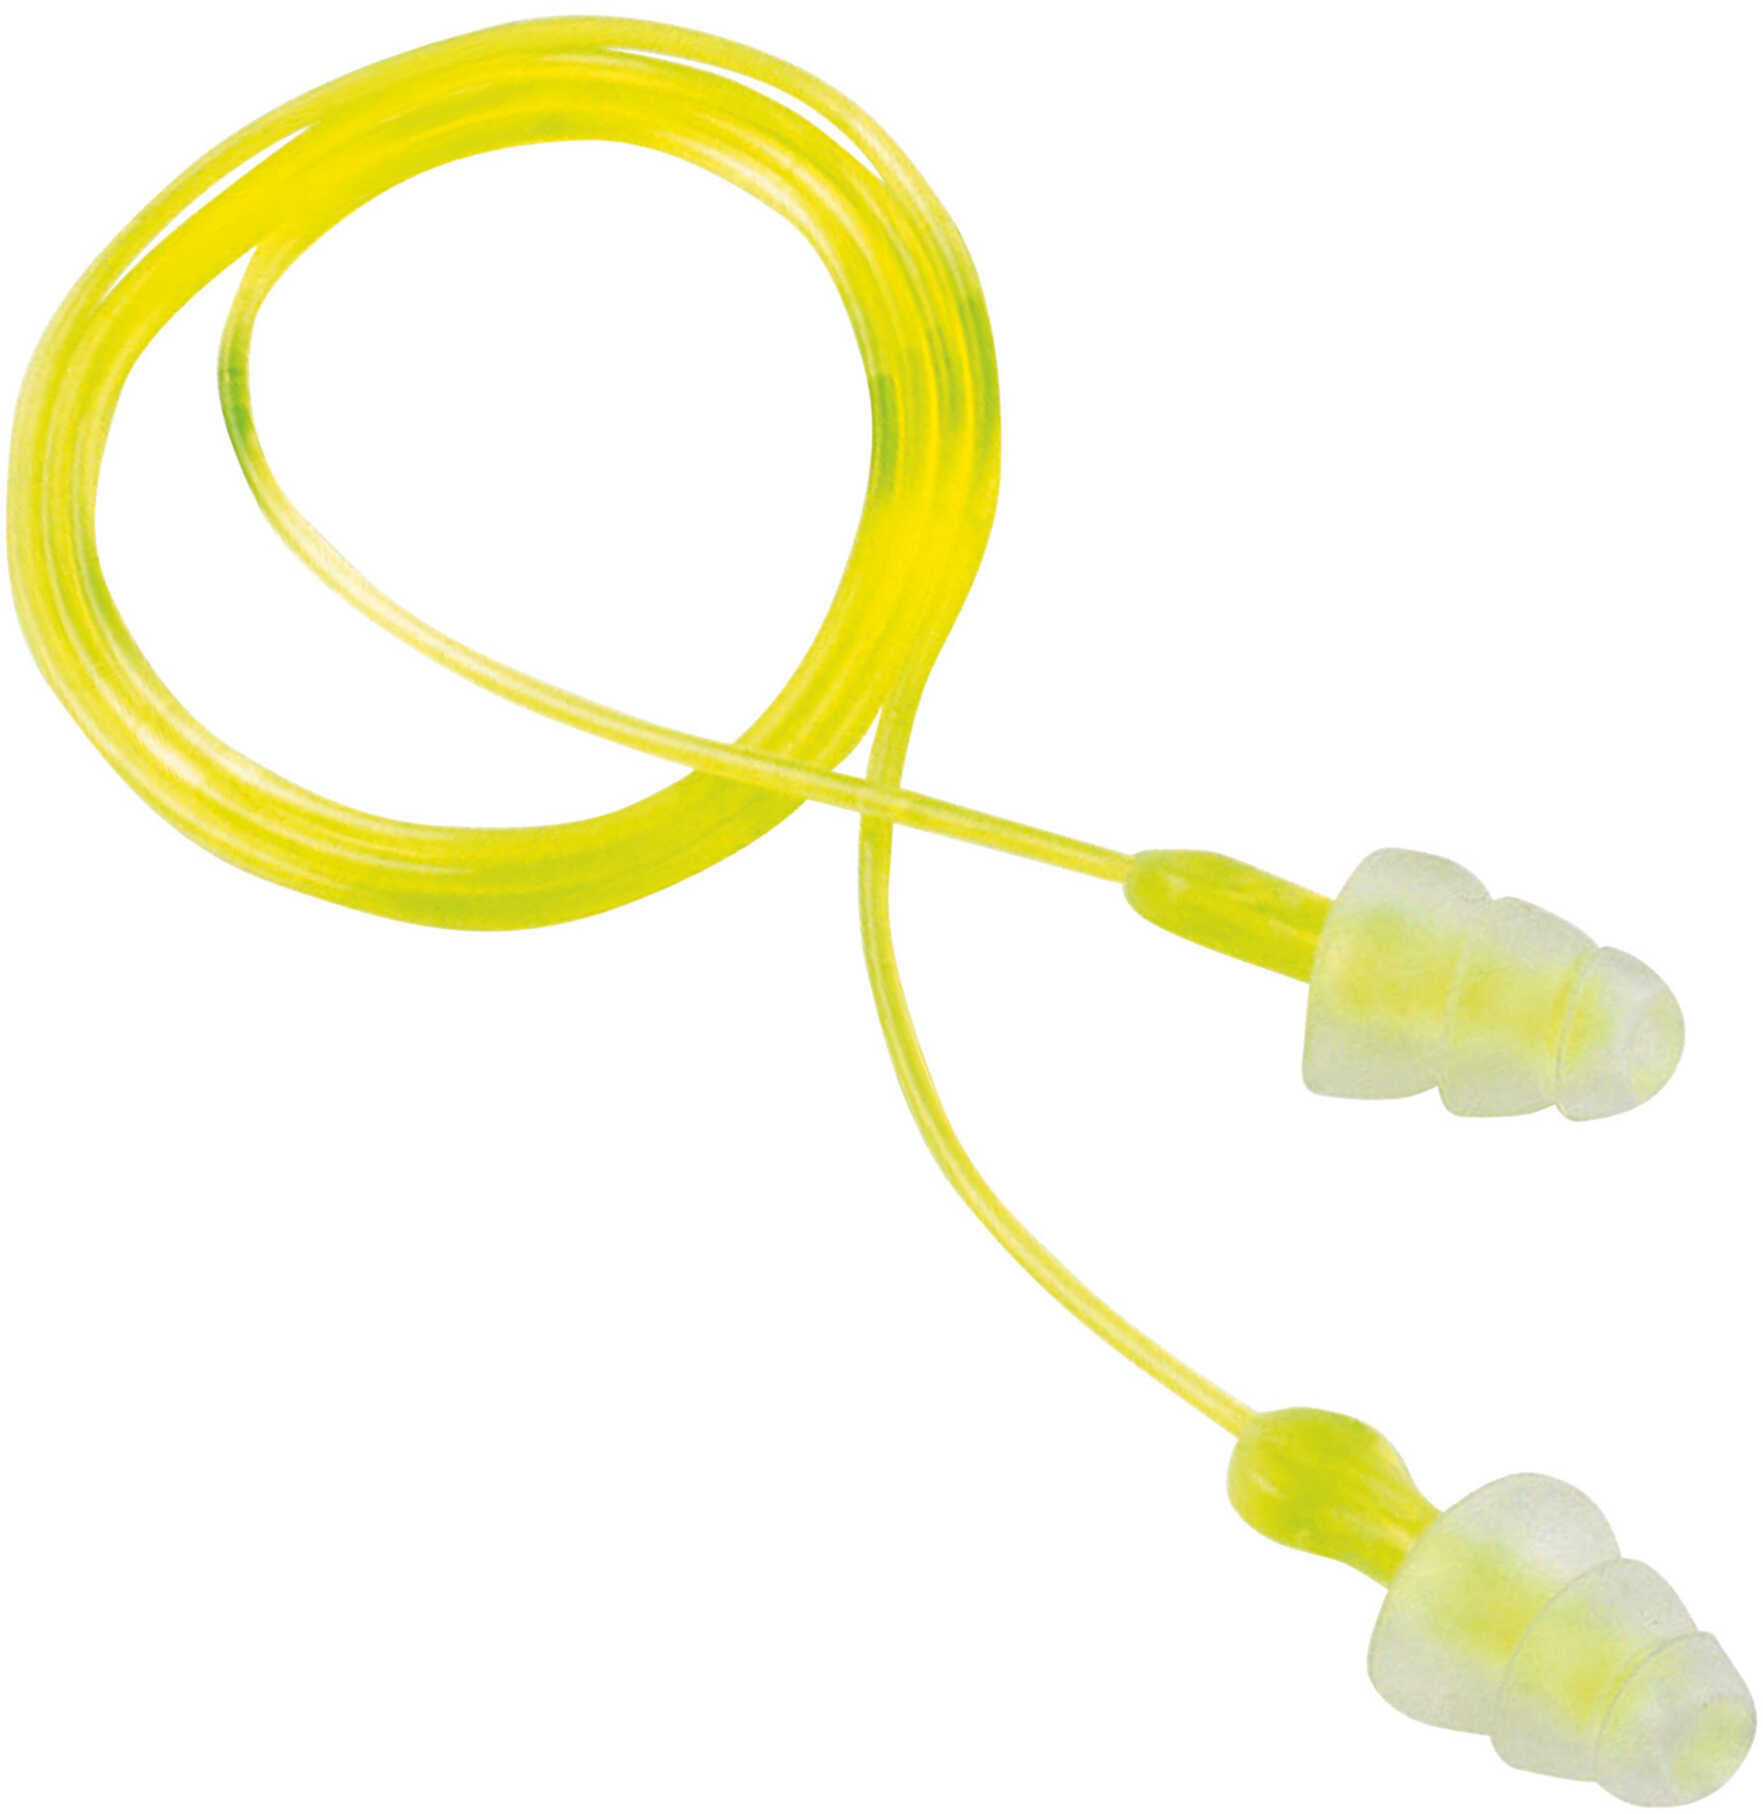 PEL TRI Flange Ear Plugs Corded